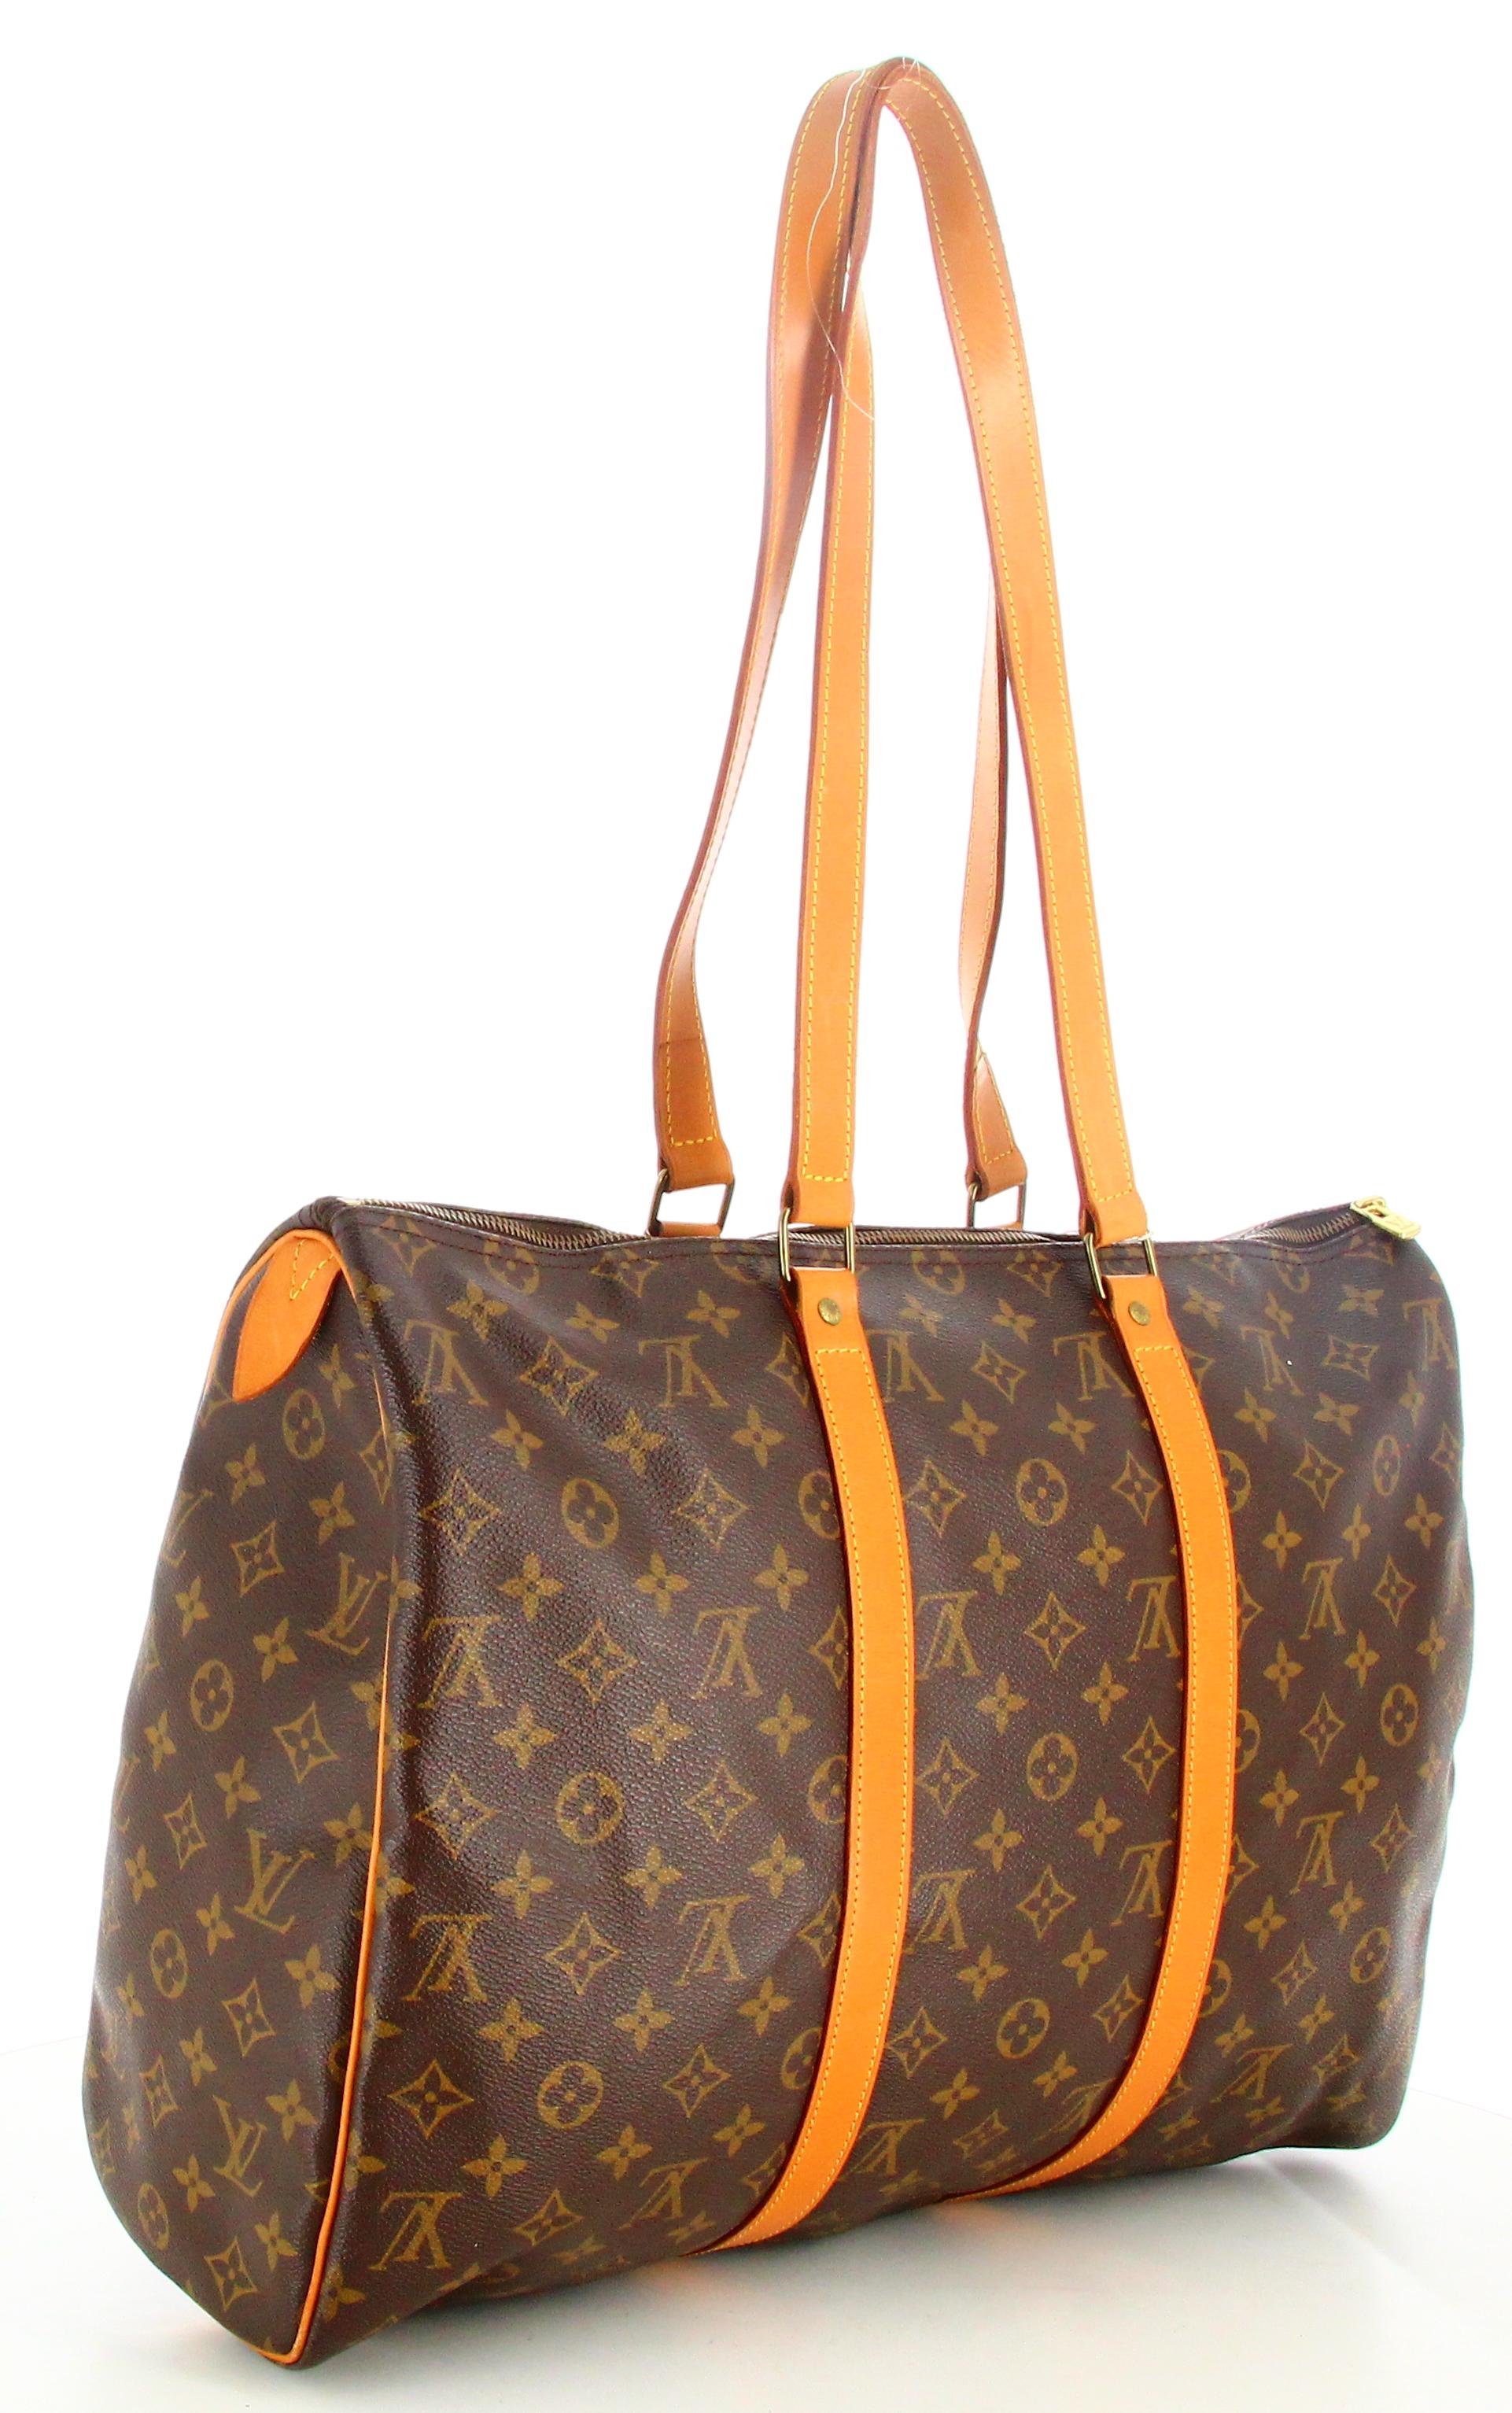 1992 Louis Vuitton Monogram Travel Bag Flannel Bag 45 For Sale 1